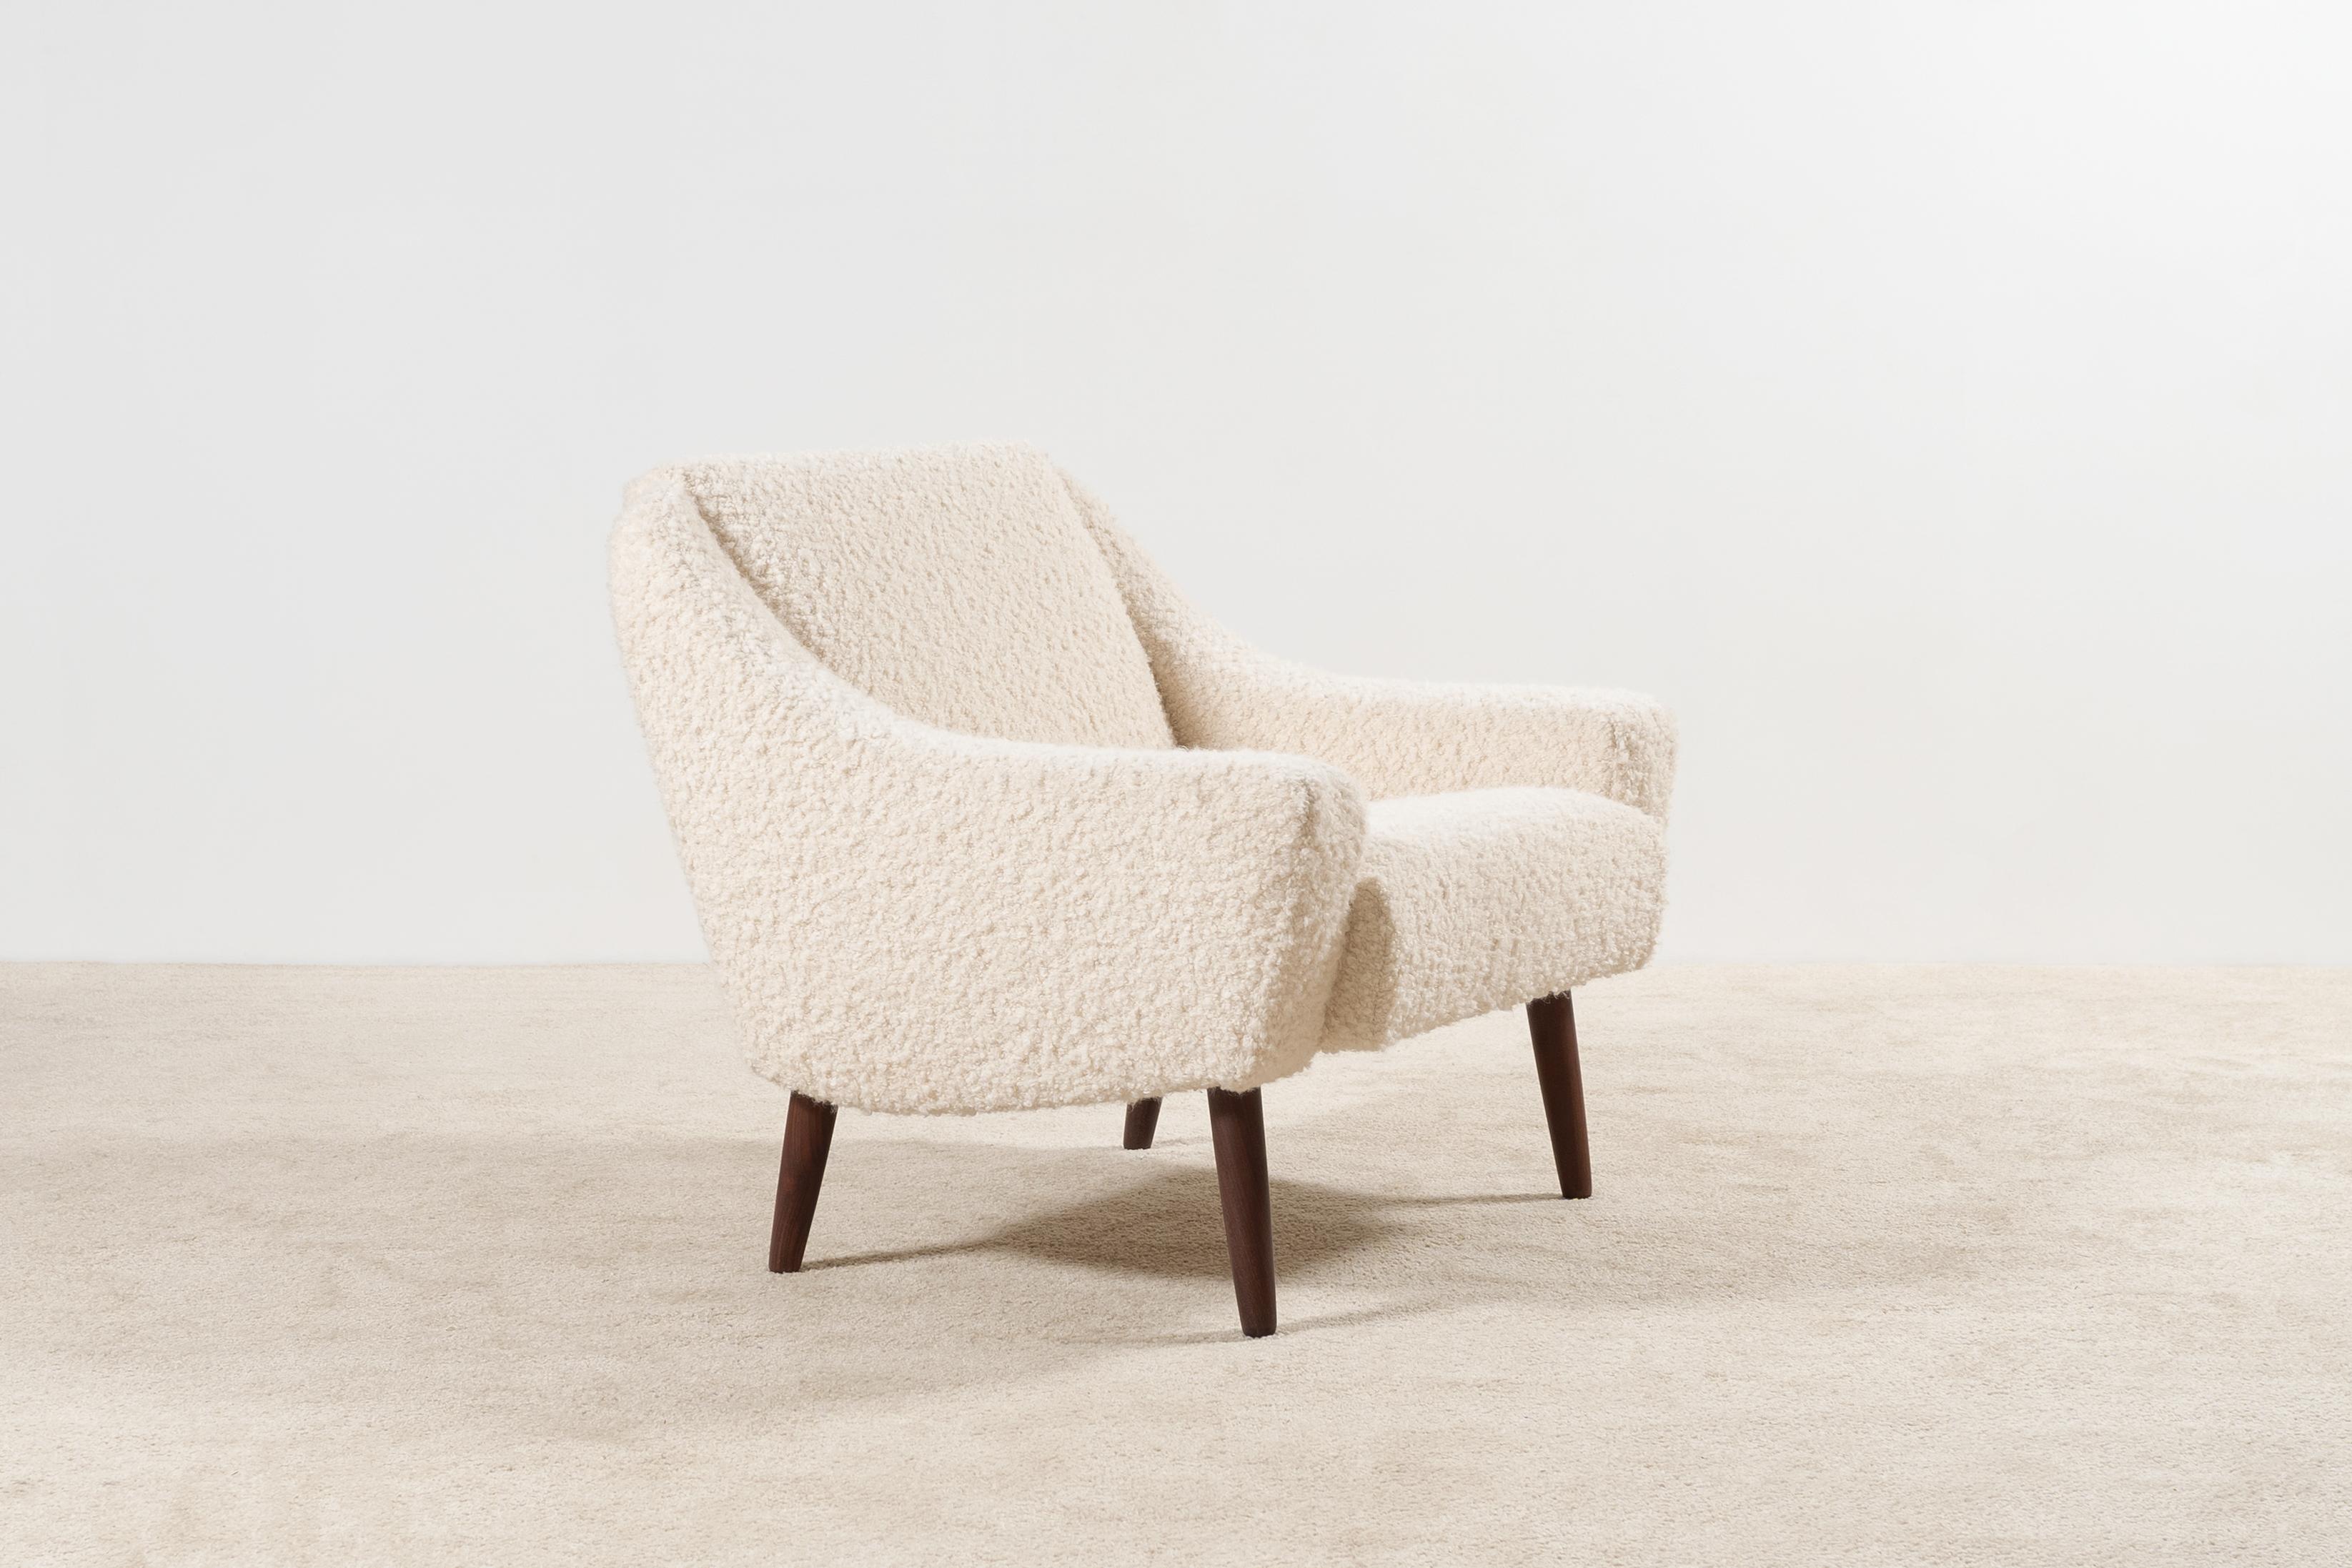 Schöner einzelner dänischer Sessel mit schönen Kurven, um 1960.
Unbekannter Designer. Schöne Teakholzfüße.

Originalstück aus den 60er Jahren, vollständig restauriert und von den besten französischen Handwerkern auf traditionelle Weise mit einem